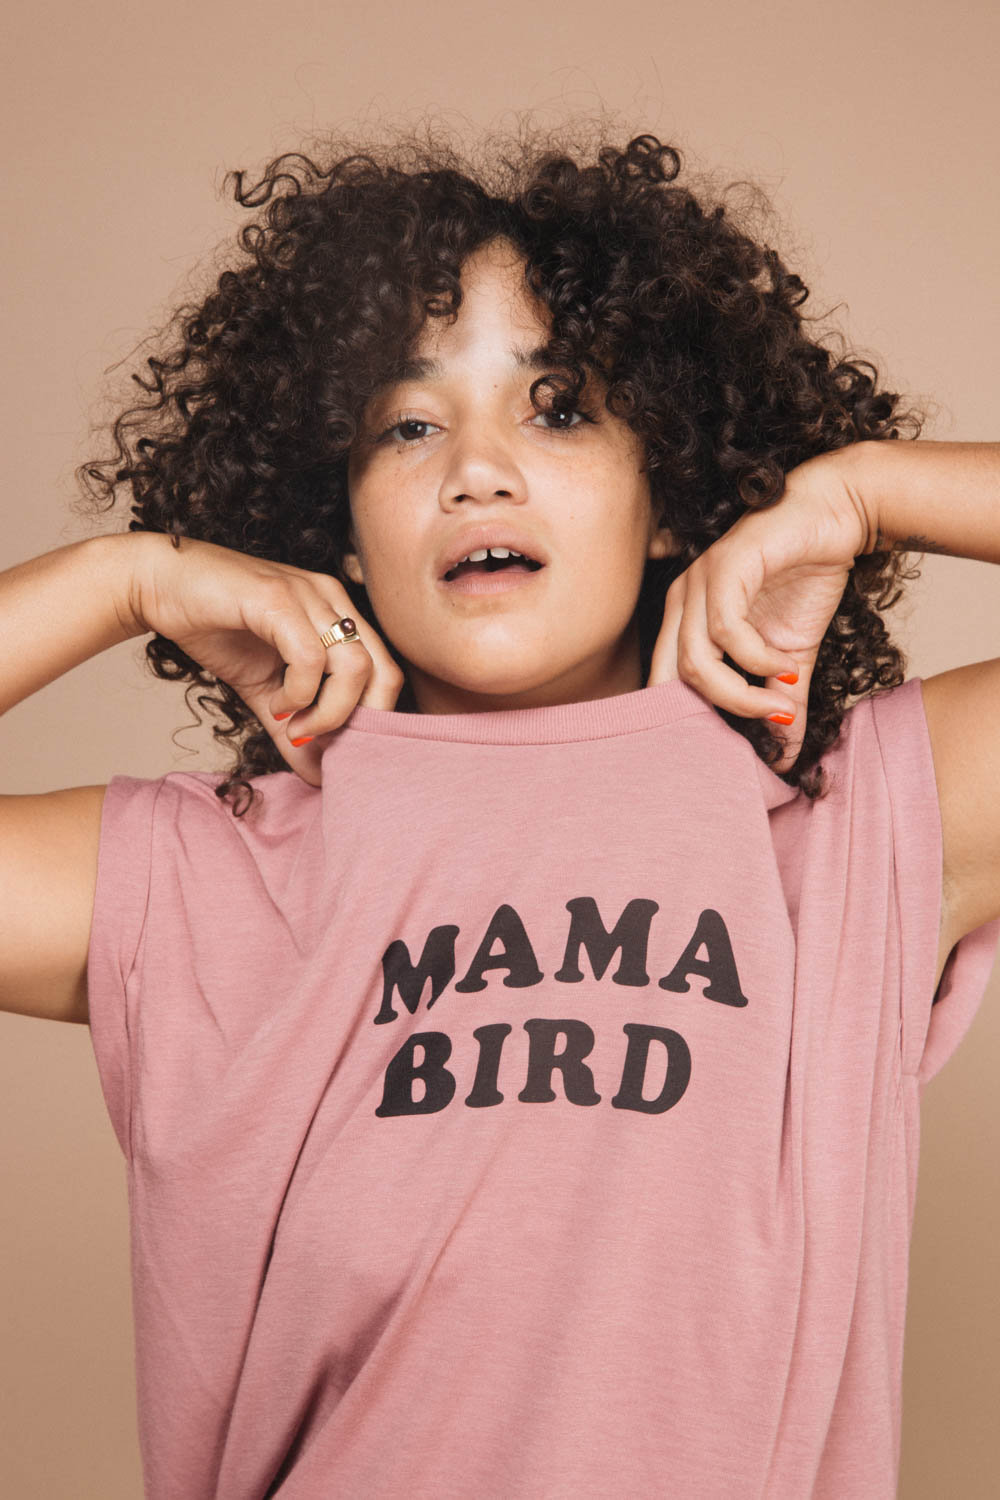 mama bird t shirt